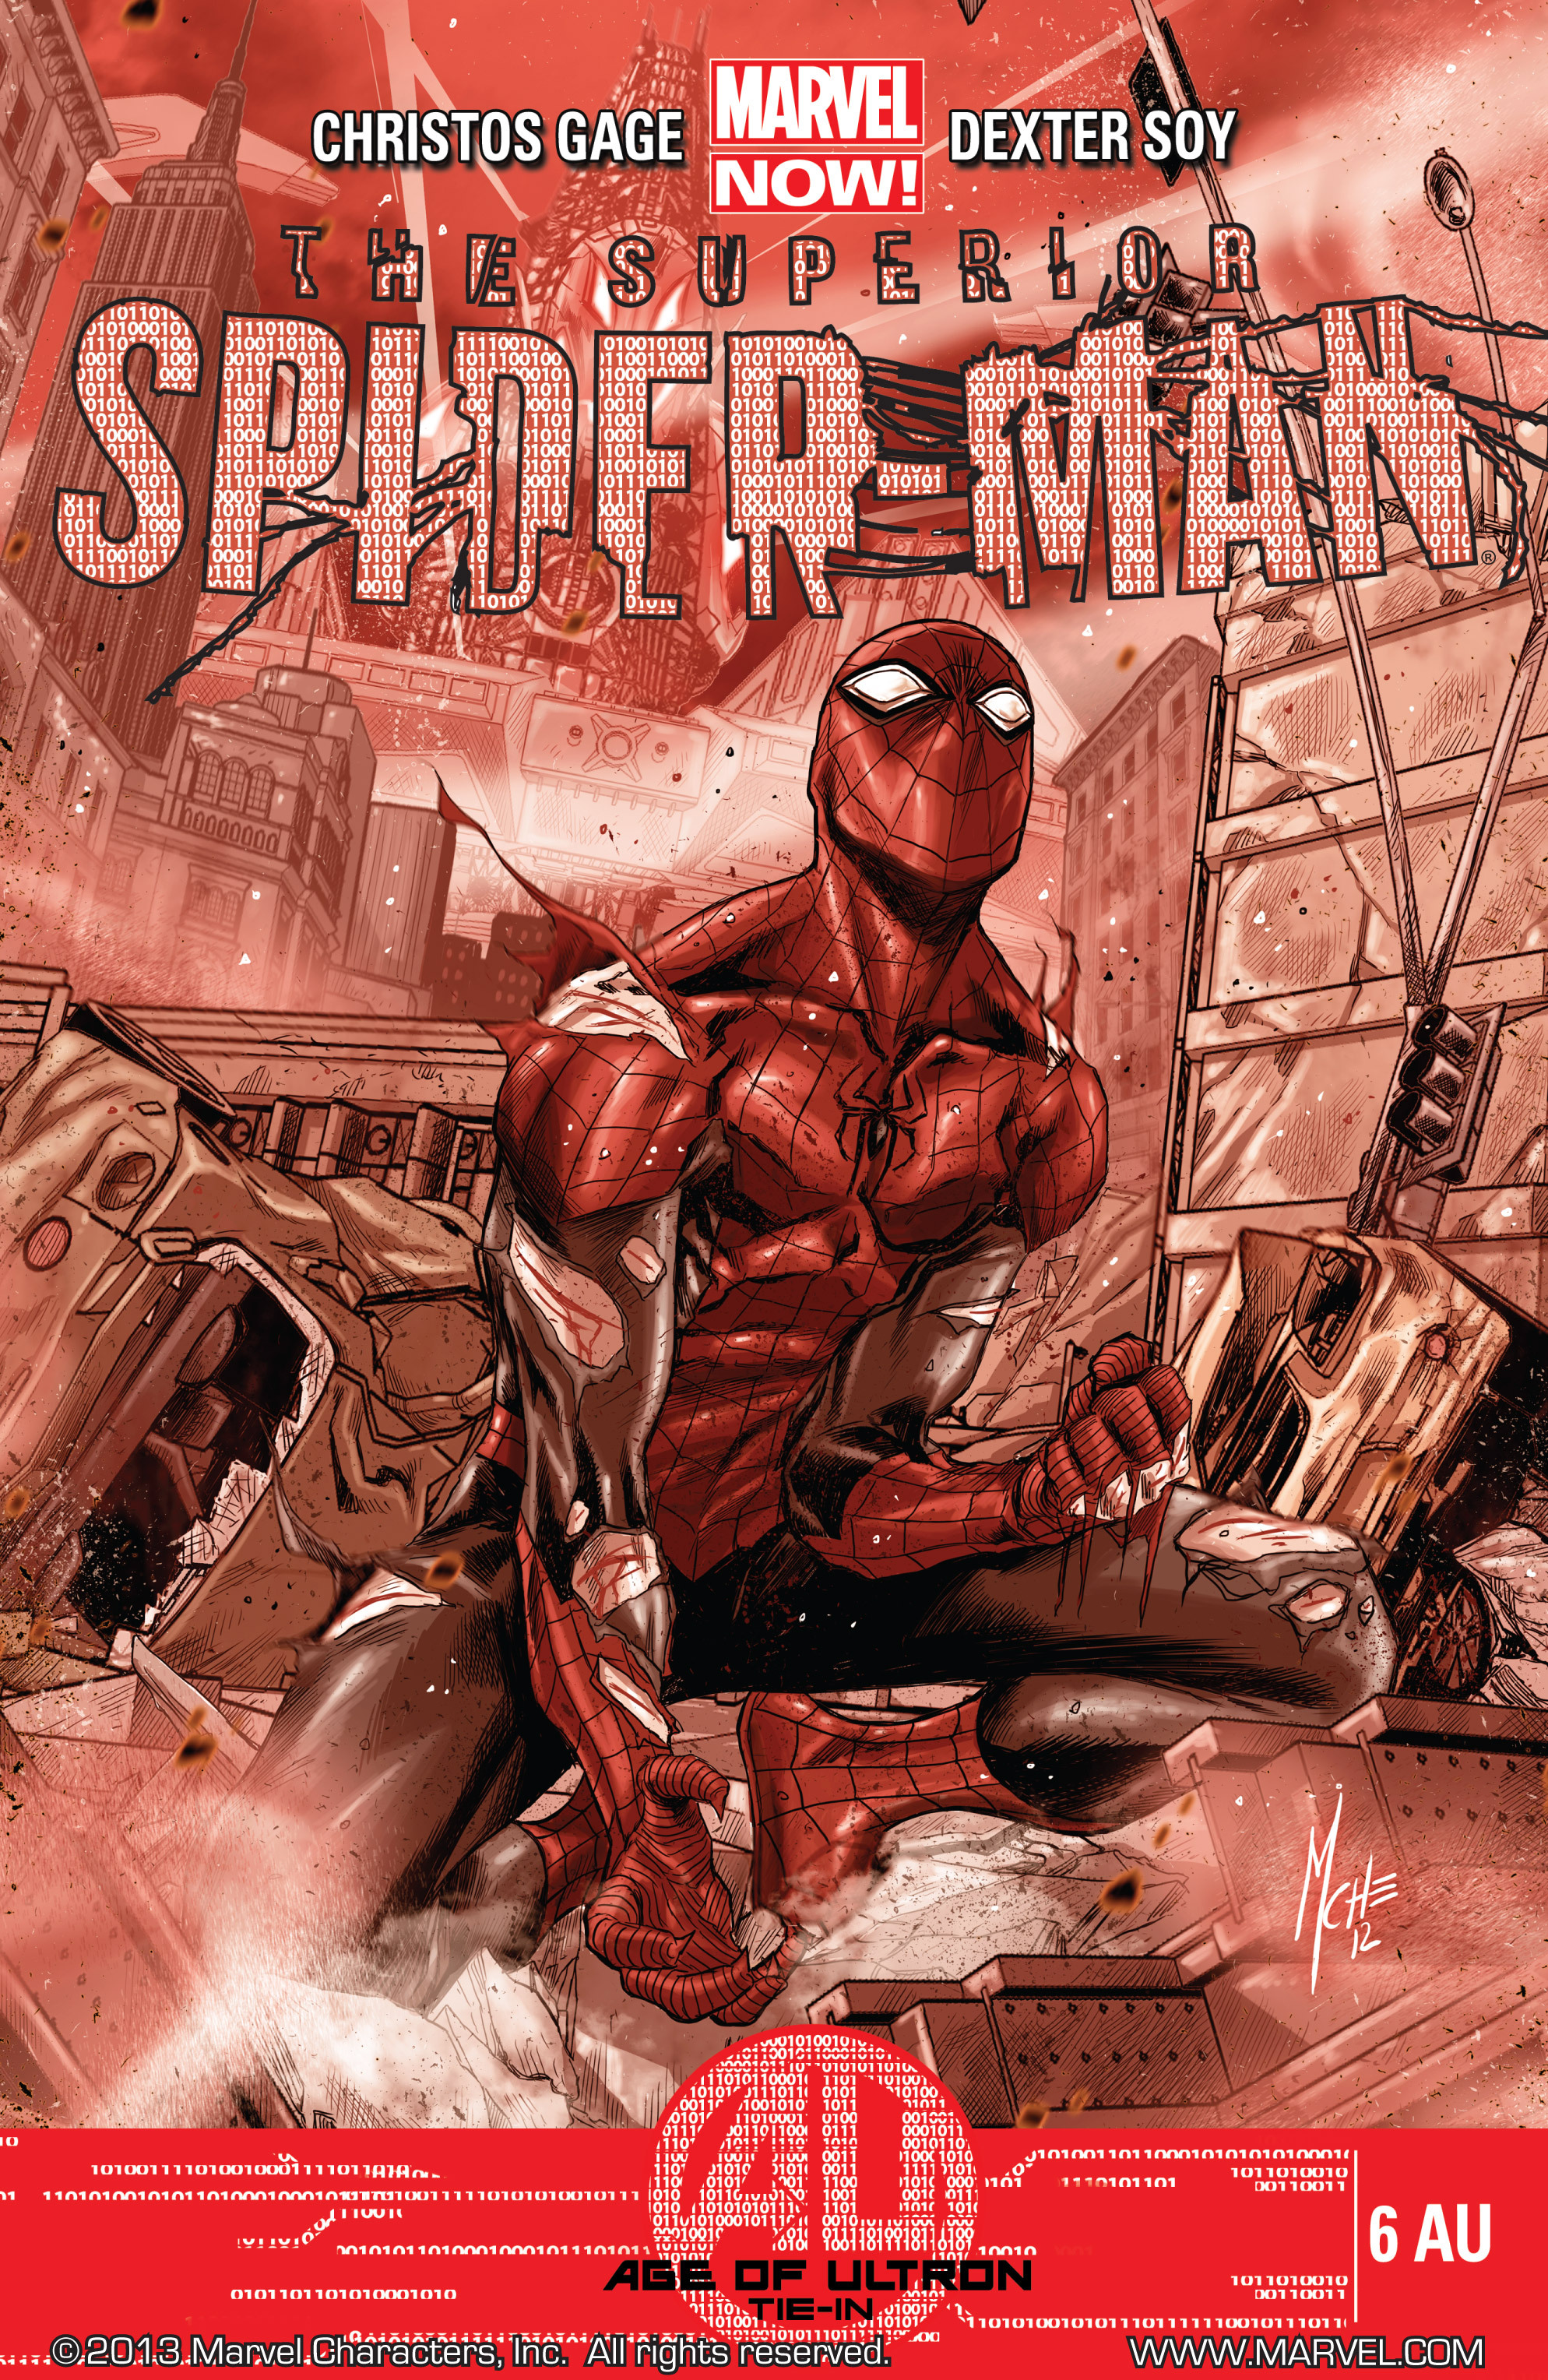 Superior Spider-Man (2013) 6 AU Page 1